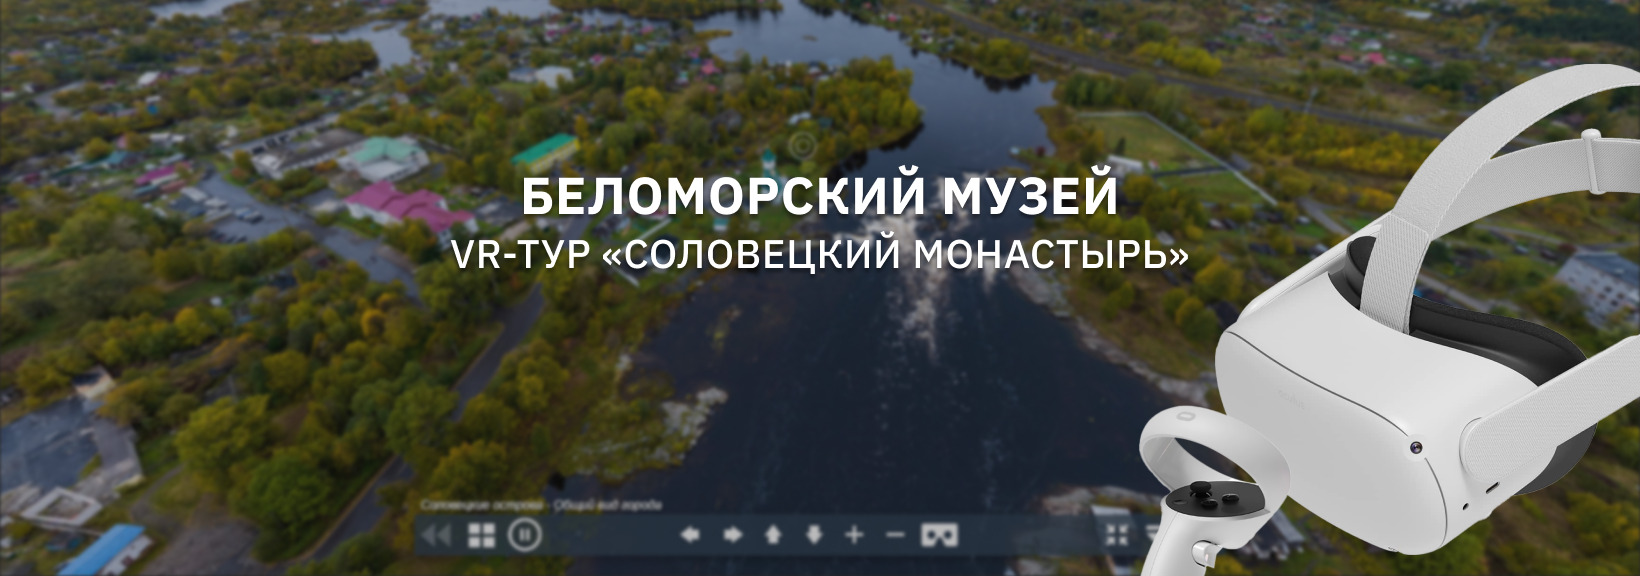 Виртуальный тур по Соловецким островам